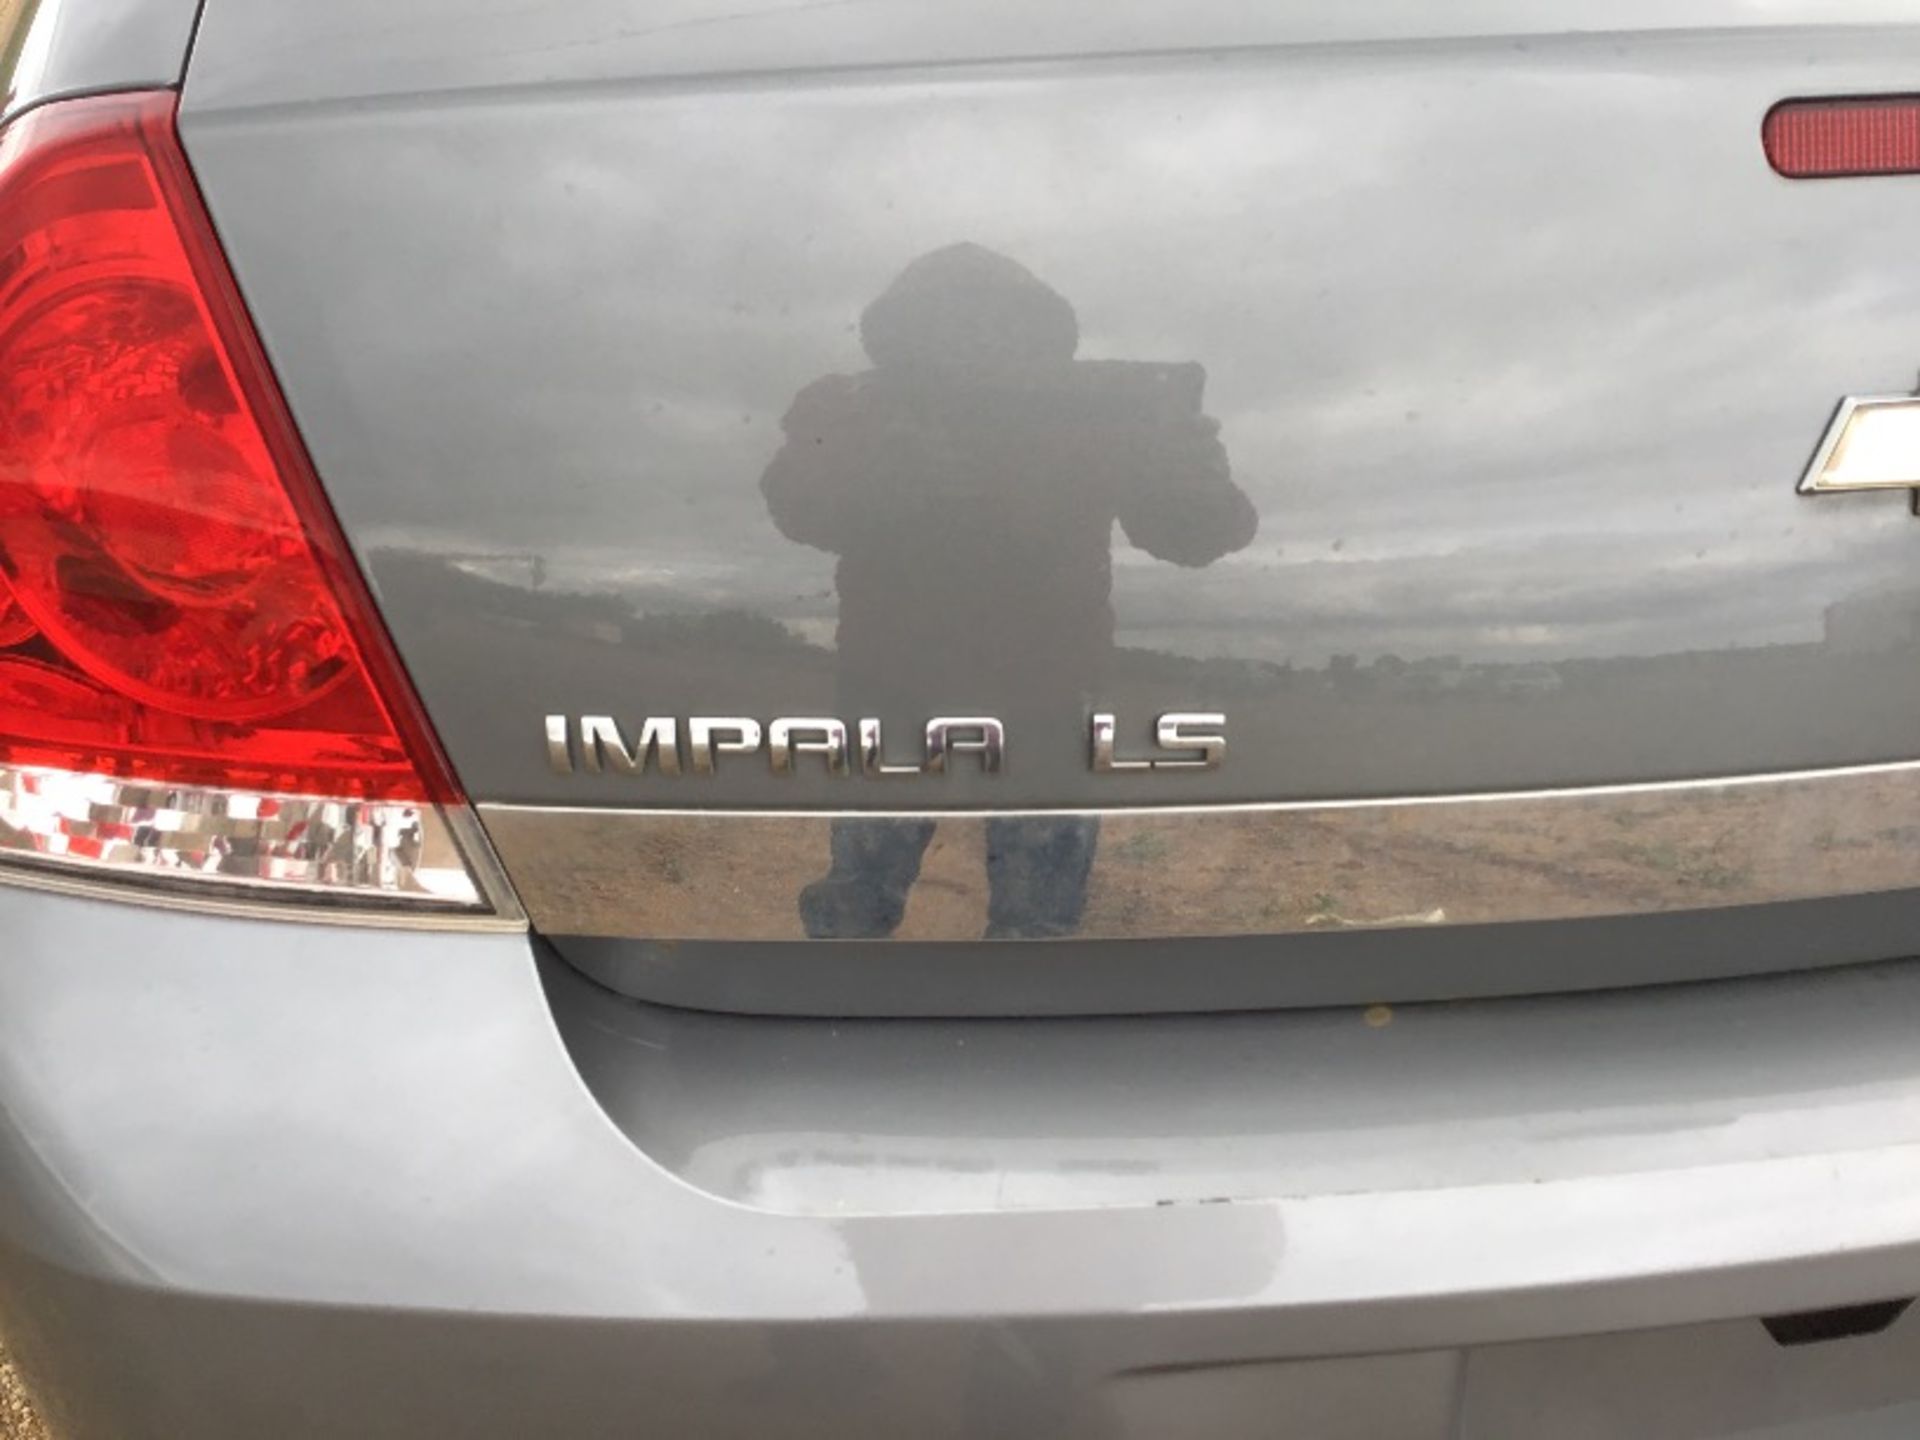 2008 Chev Impala 4-Door Car - Image 4 of 12